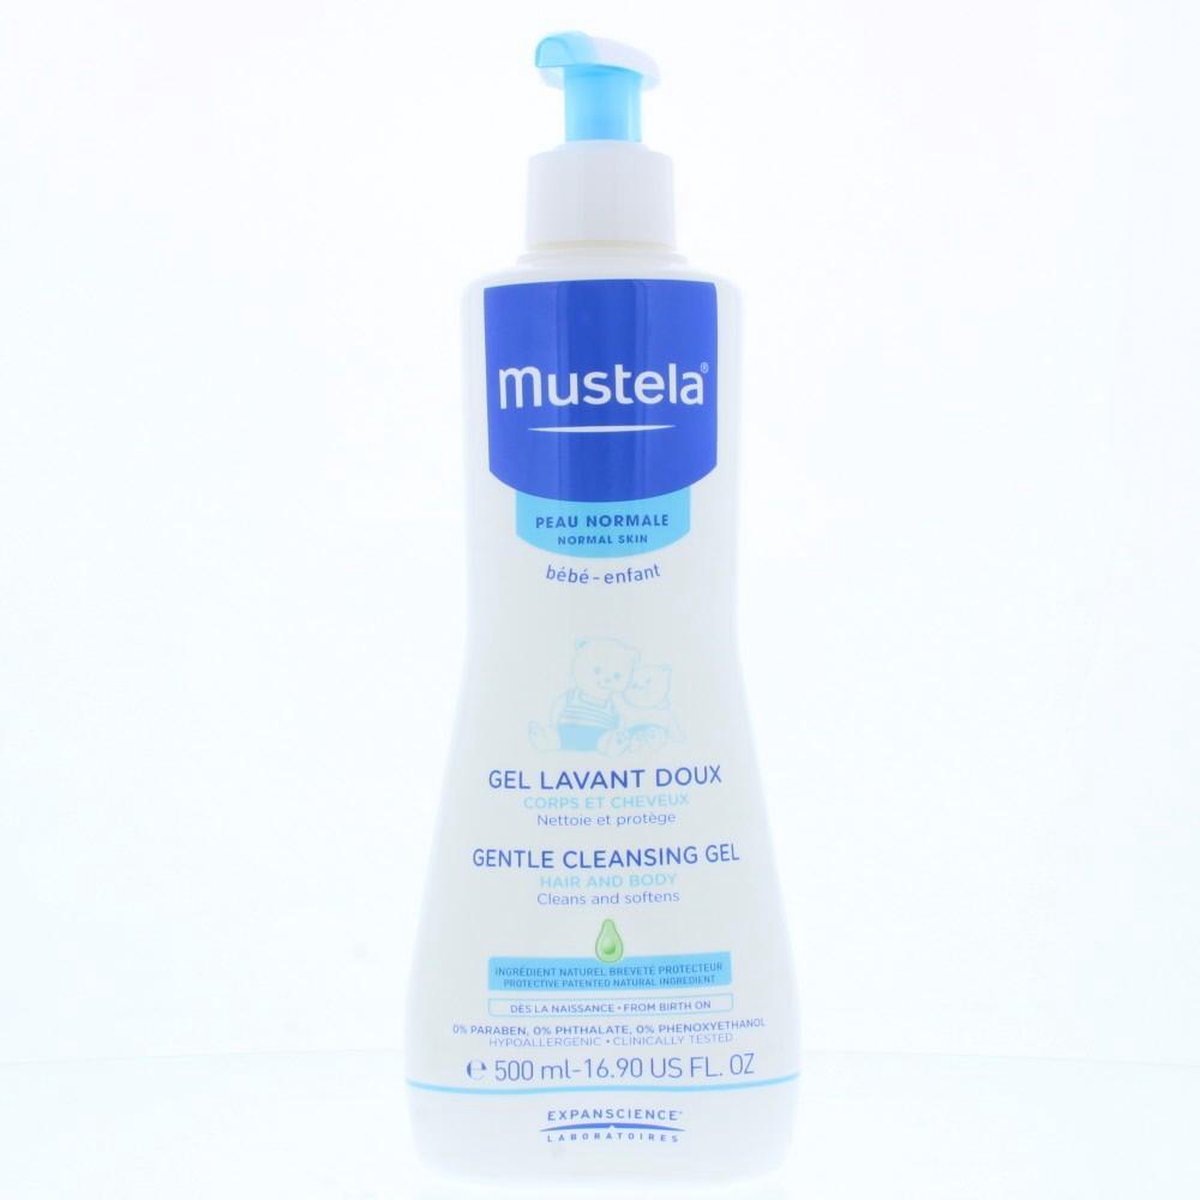 Mustela B?b?-enfant Gentle Cleansing Gel 500ml - Normal Skin